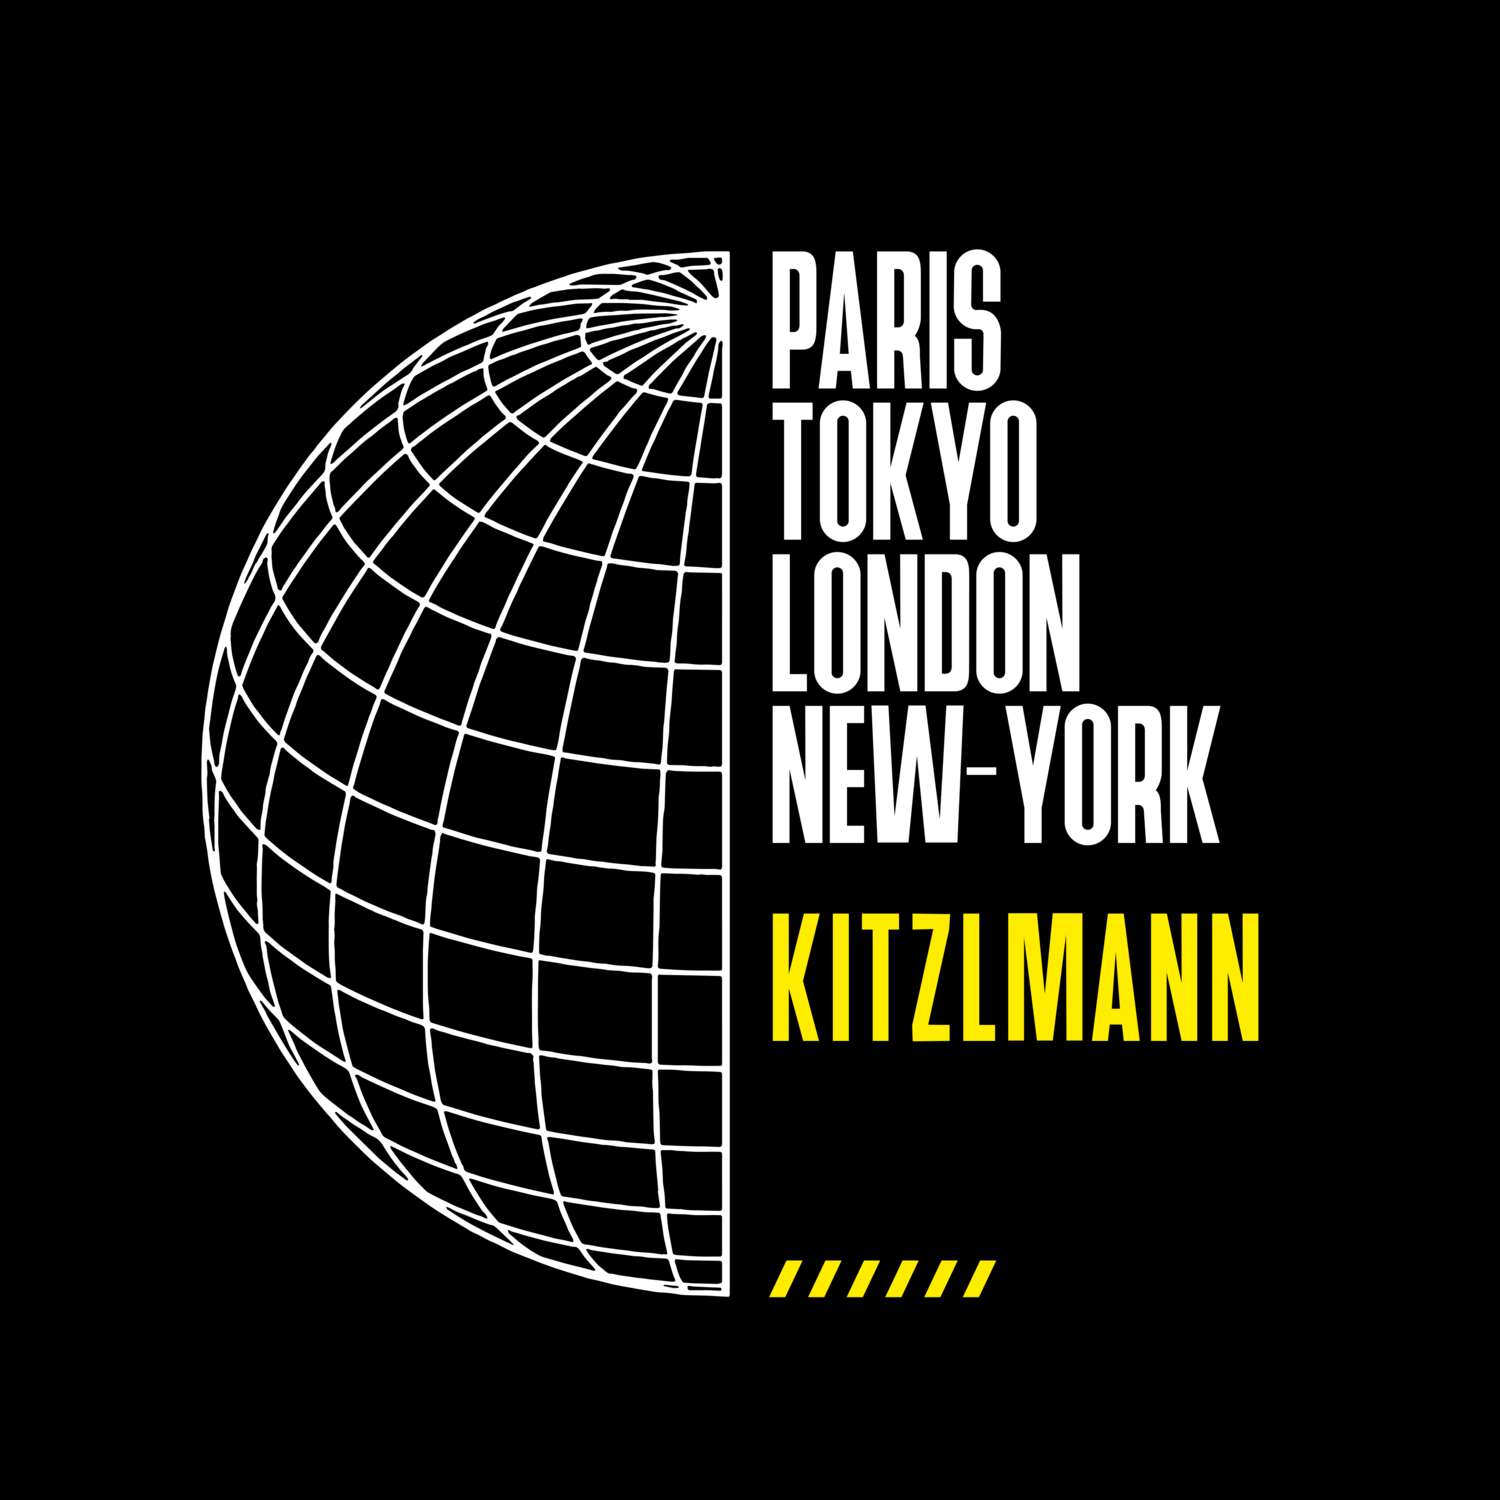 Kitzlmann T-Shirt »Paris Tokyo London«